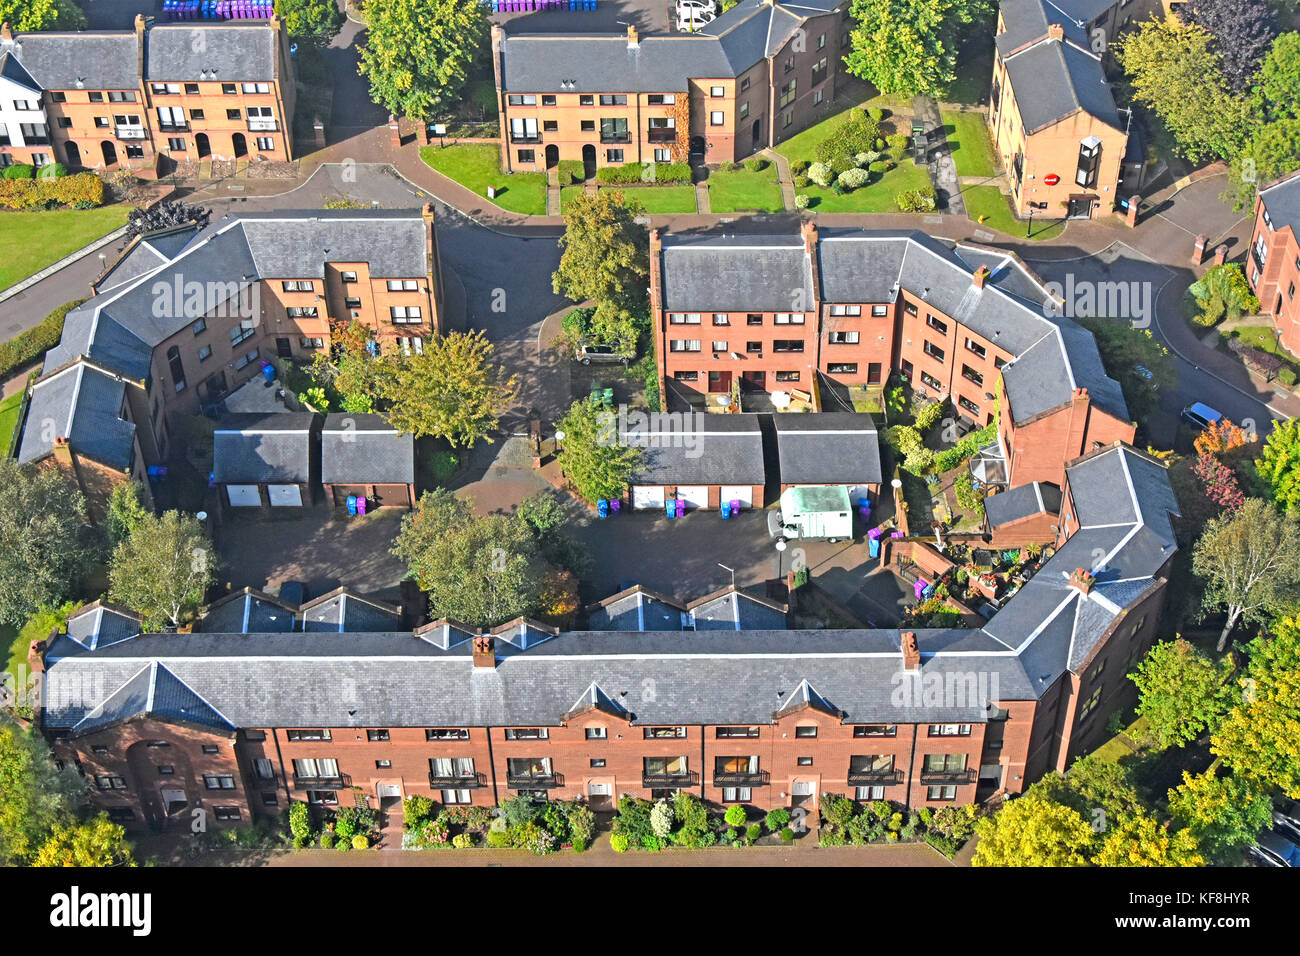 Vue de dessus à la recherche sur le développement du logement moderne du centre-ville de trois étages en Liverpool Merseyside England UK Banque D'Images